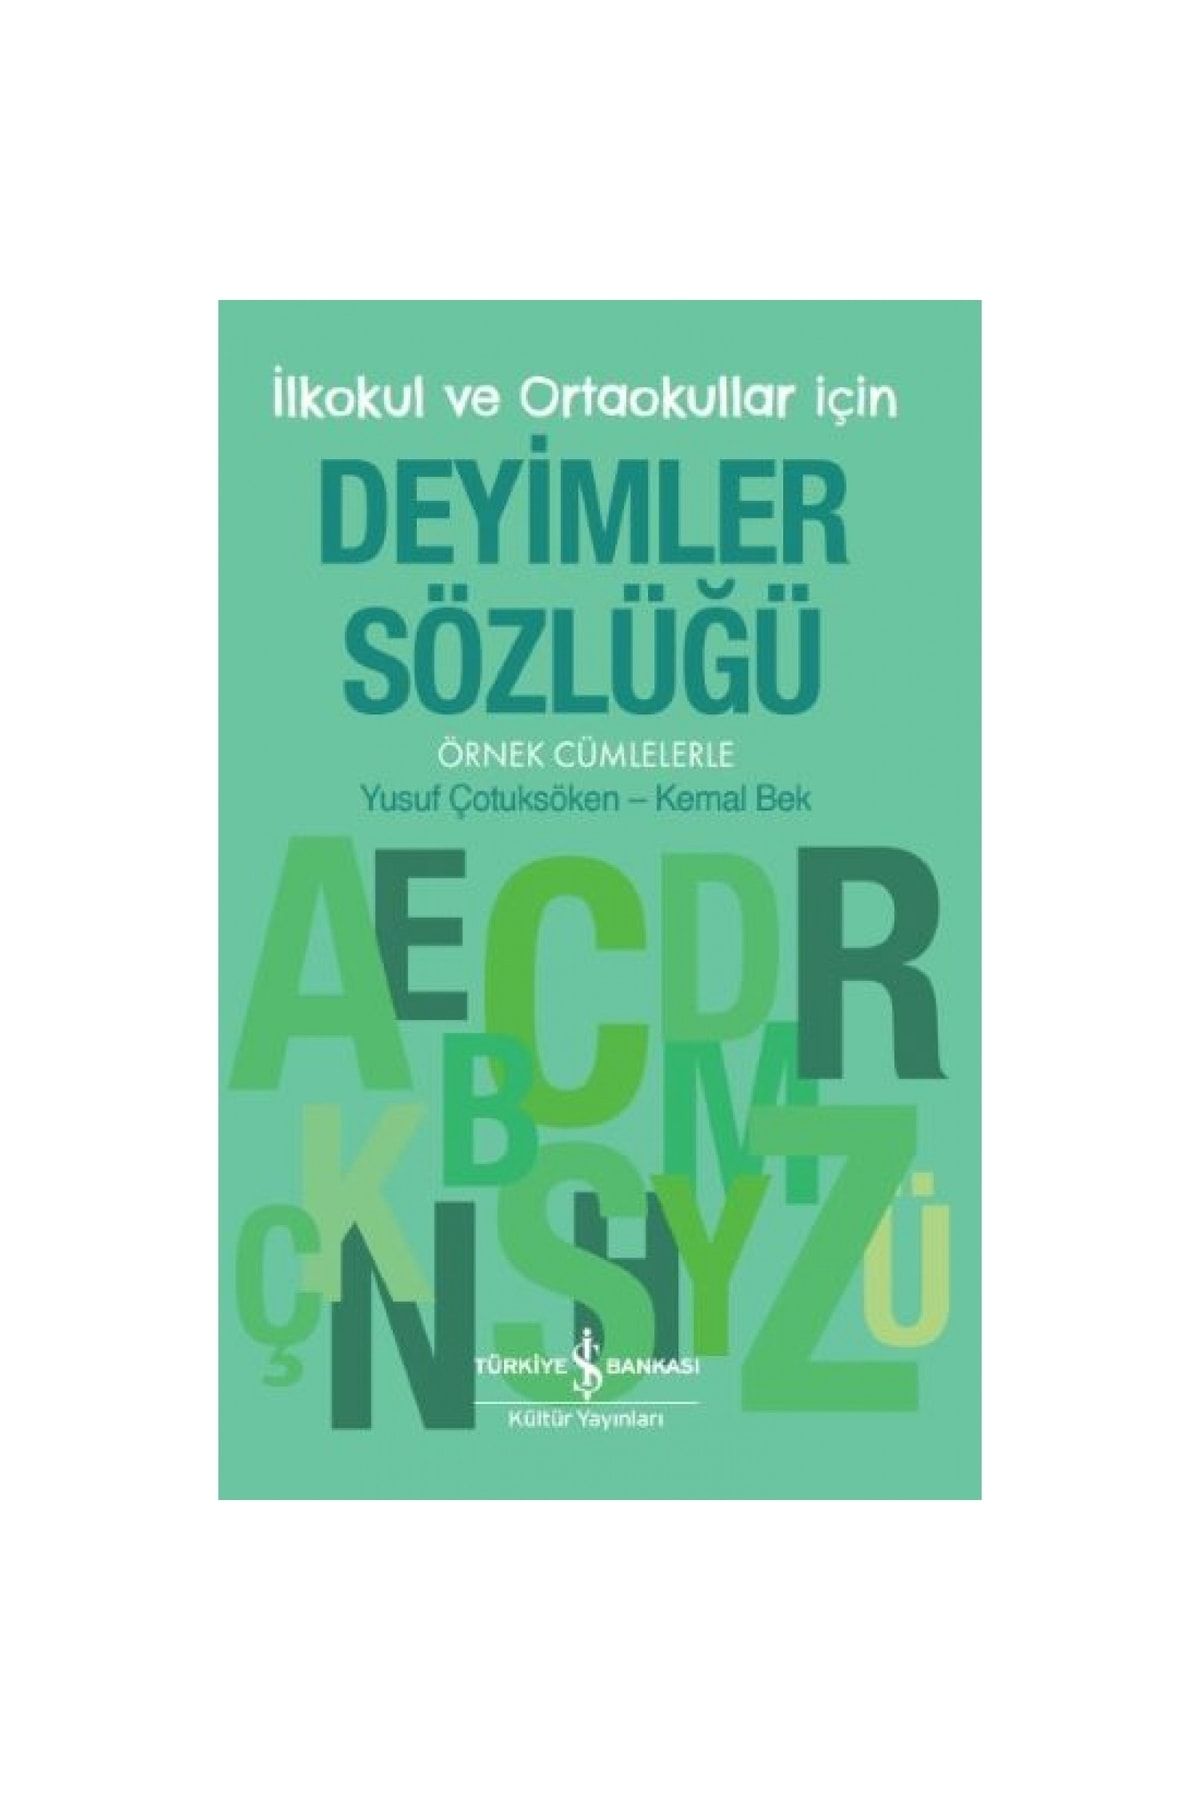 Türkiye İş Bankası Kültür Yayınları İlkokul ve Ortaokullar İçin Deyimler Sözlüğü - Örnek Cümlelerle